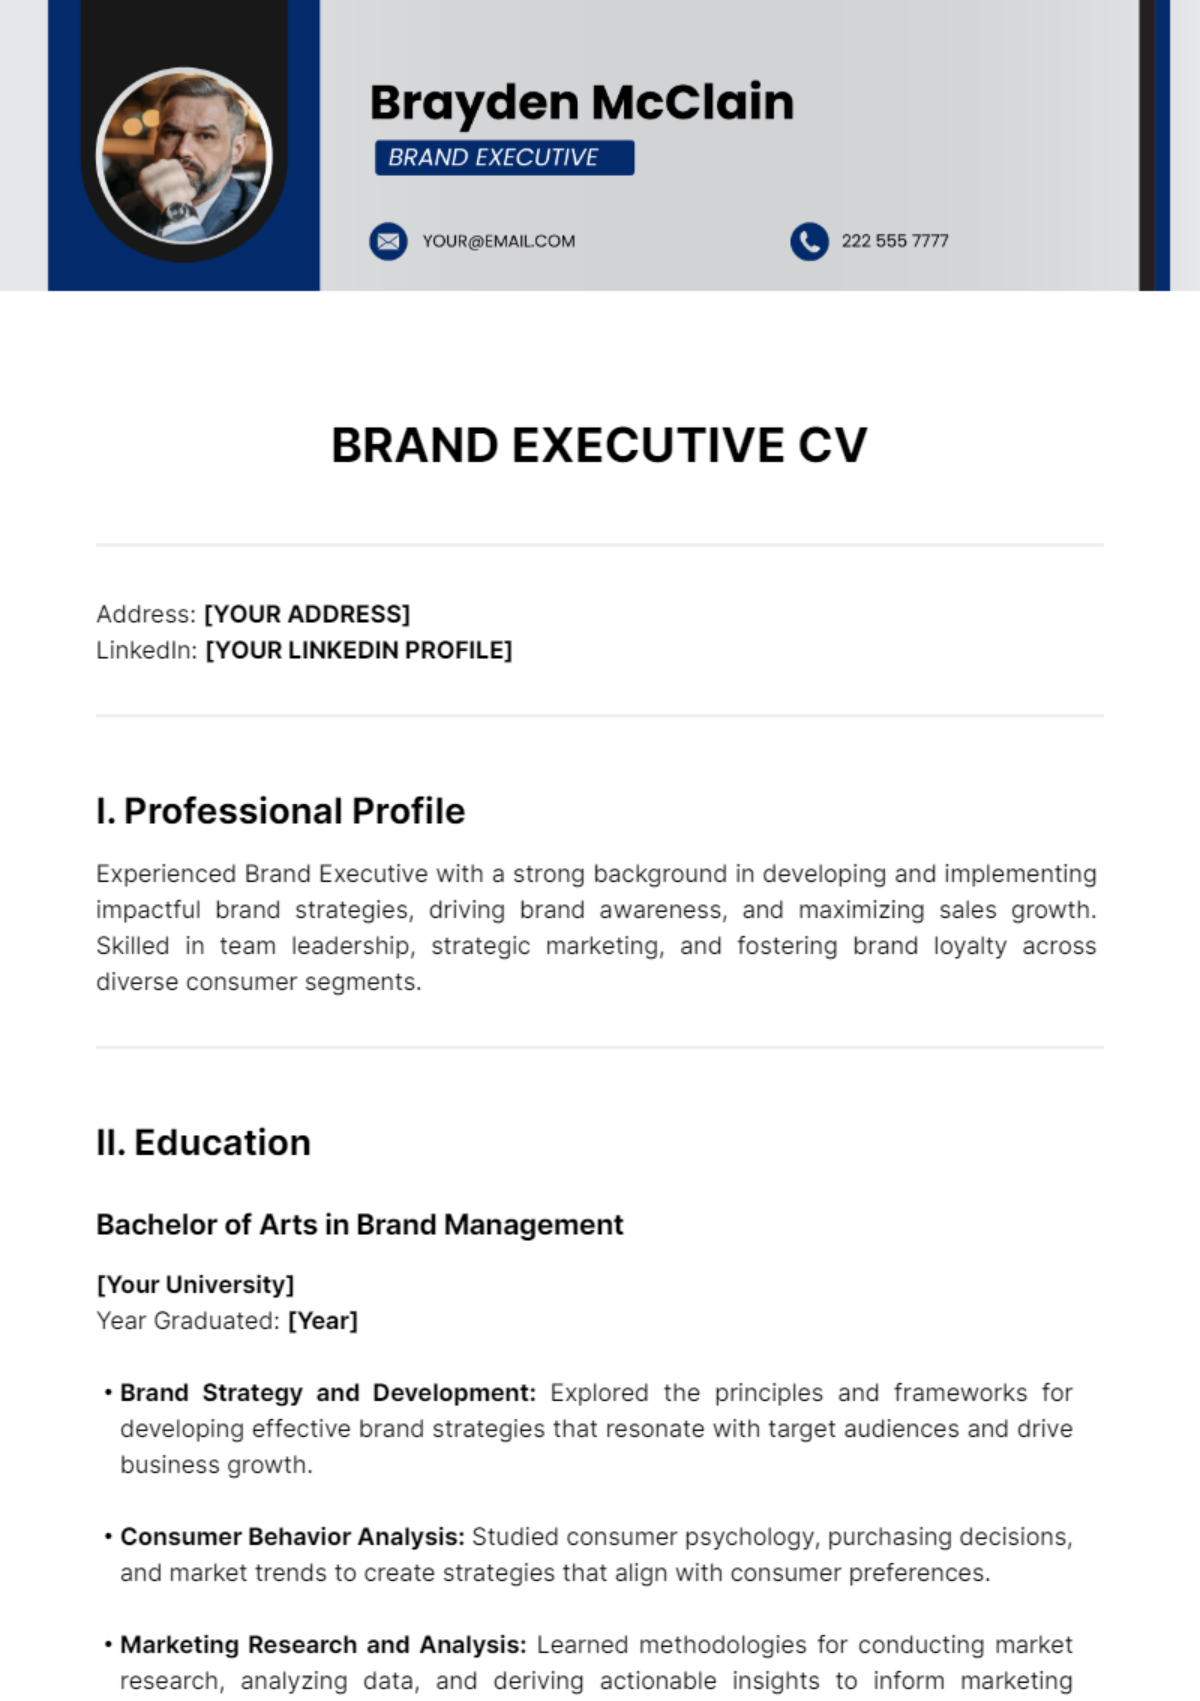 Brand Executive CV Template